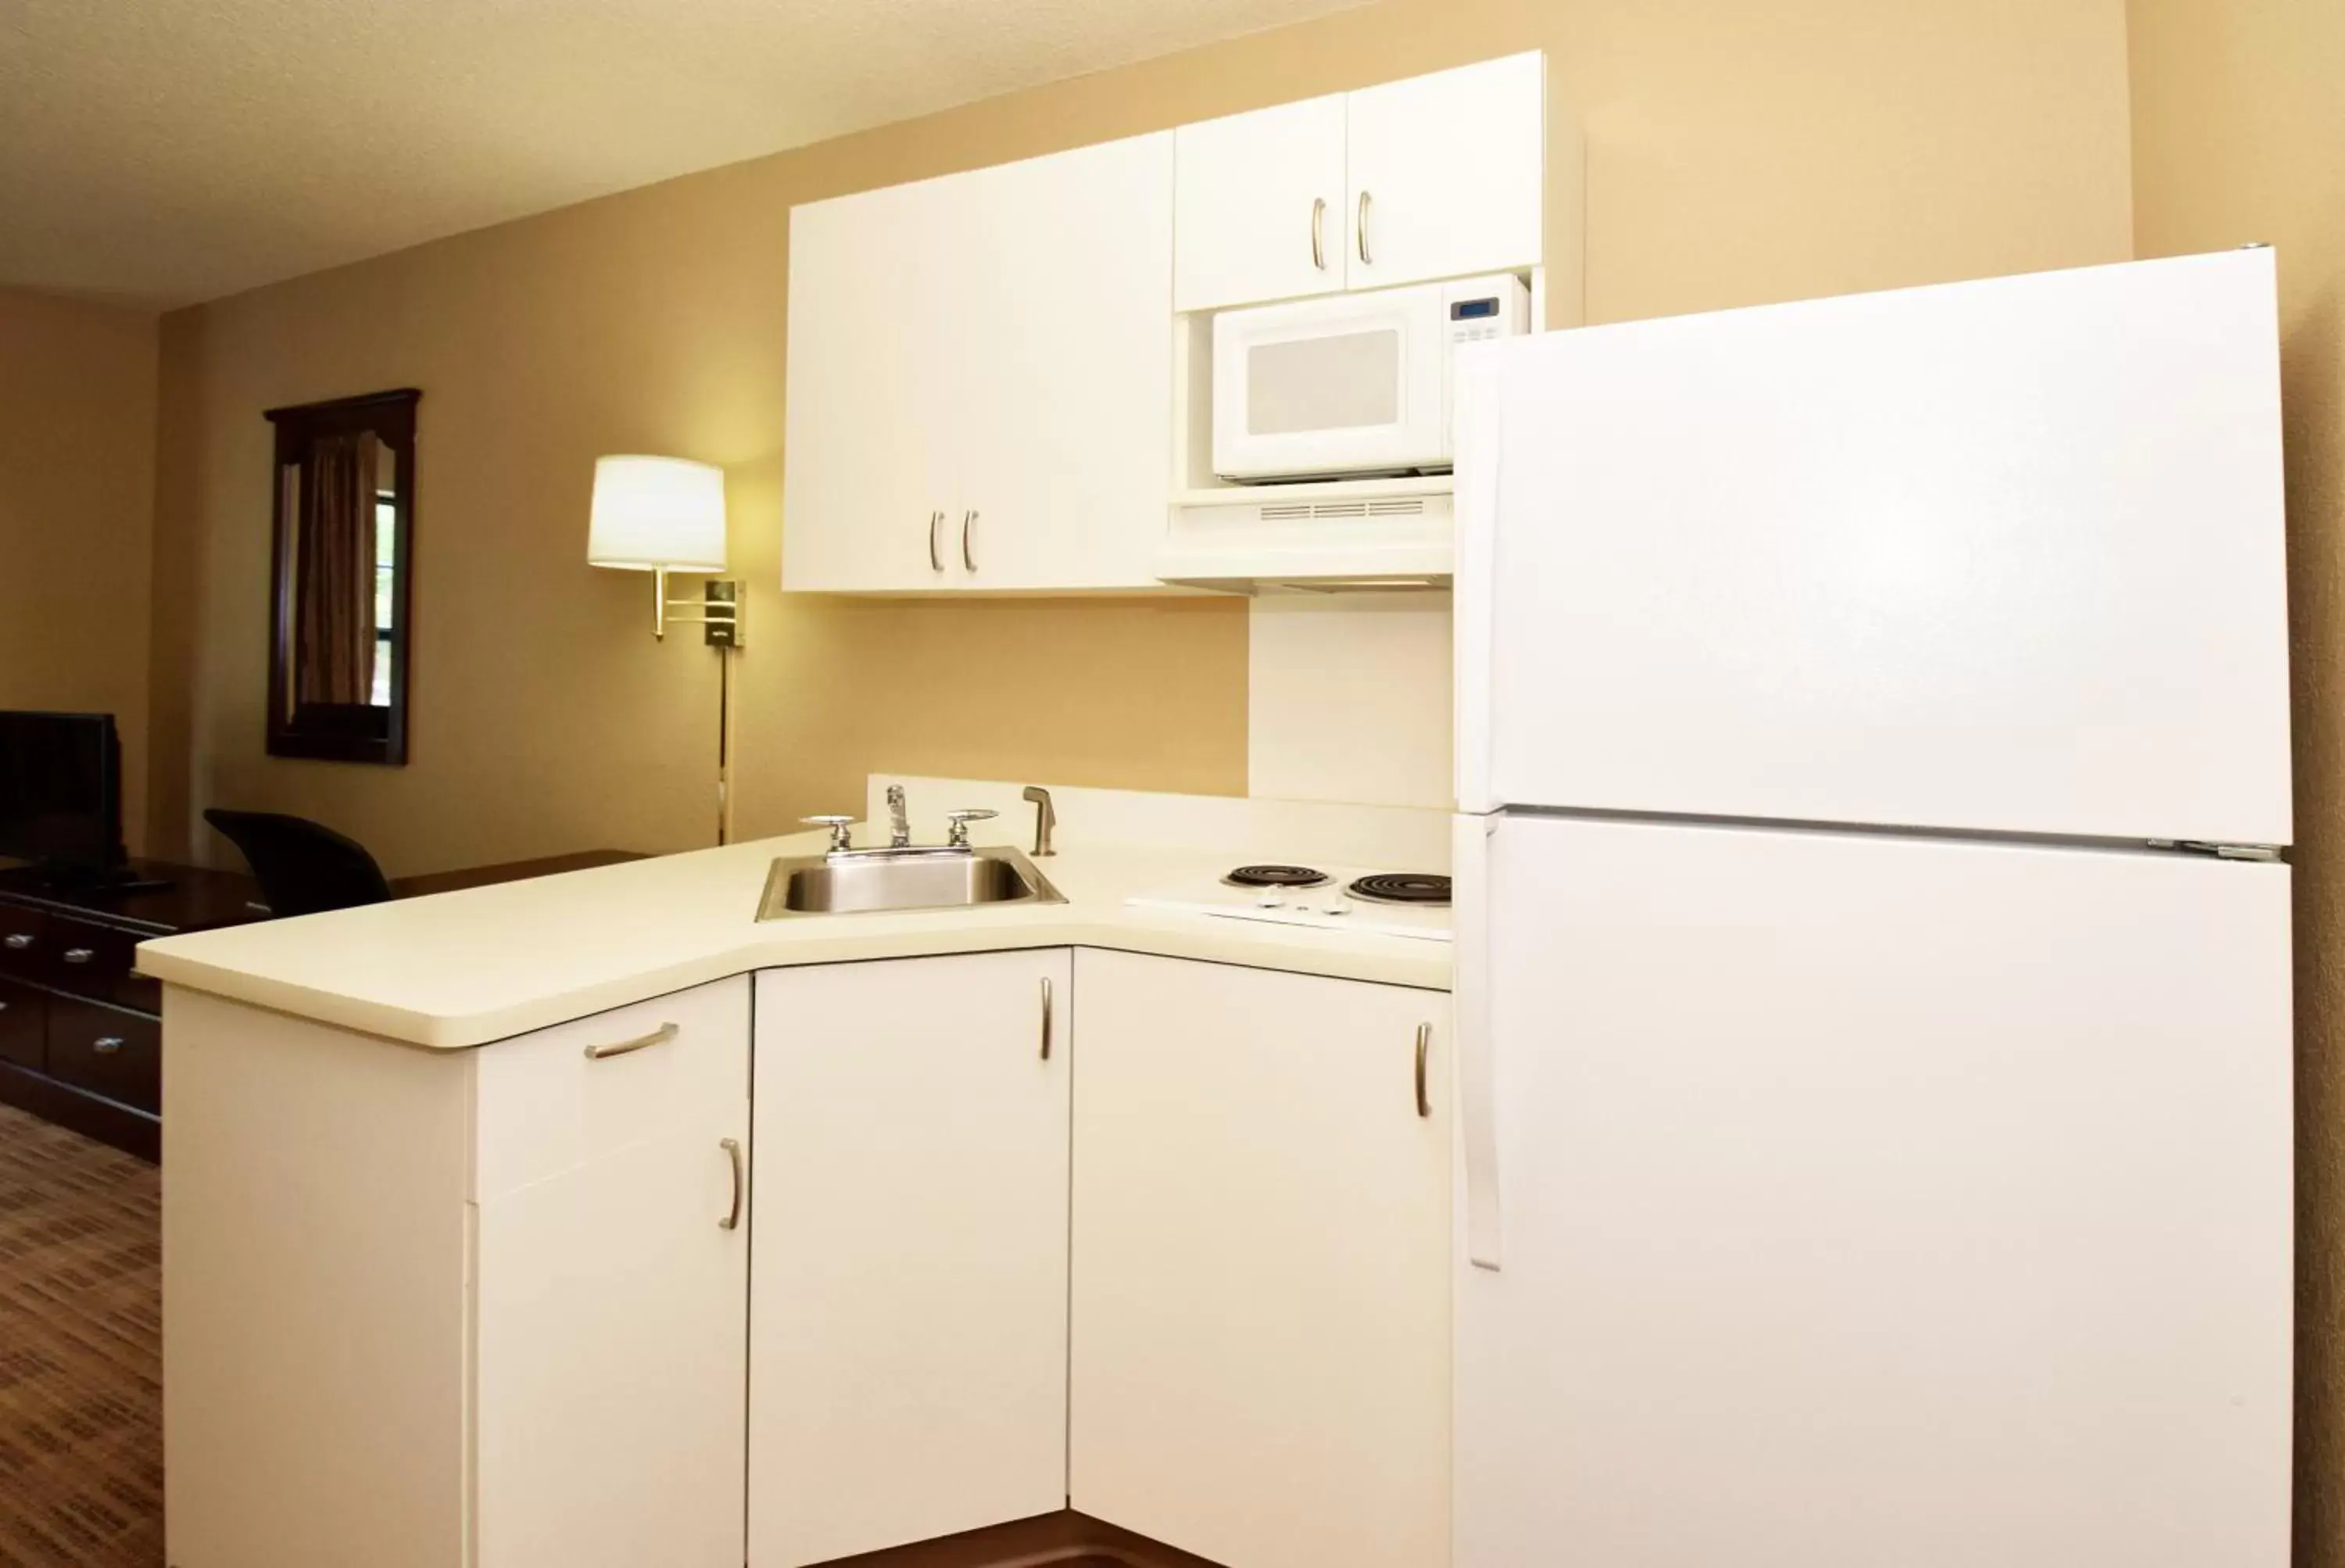 Kitchen or kitchenette, Kitchen/Kitchenette in Extended Stay America Suites - Cincinnati - Florence - Turfway Rd